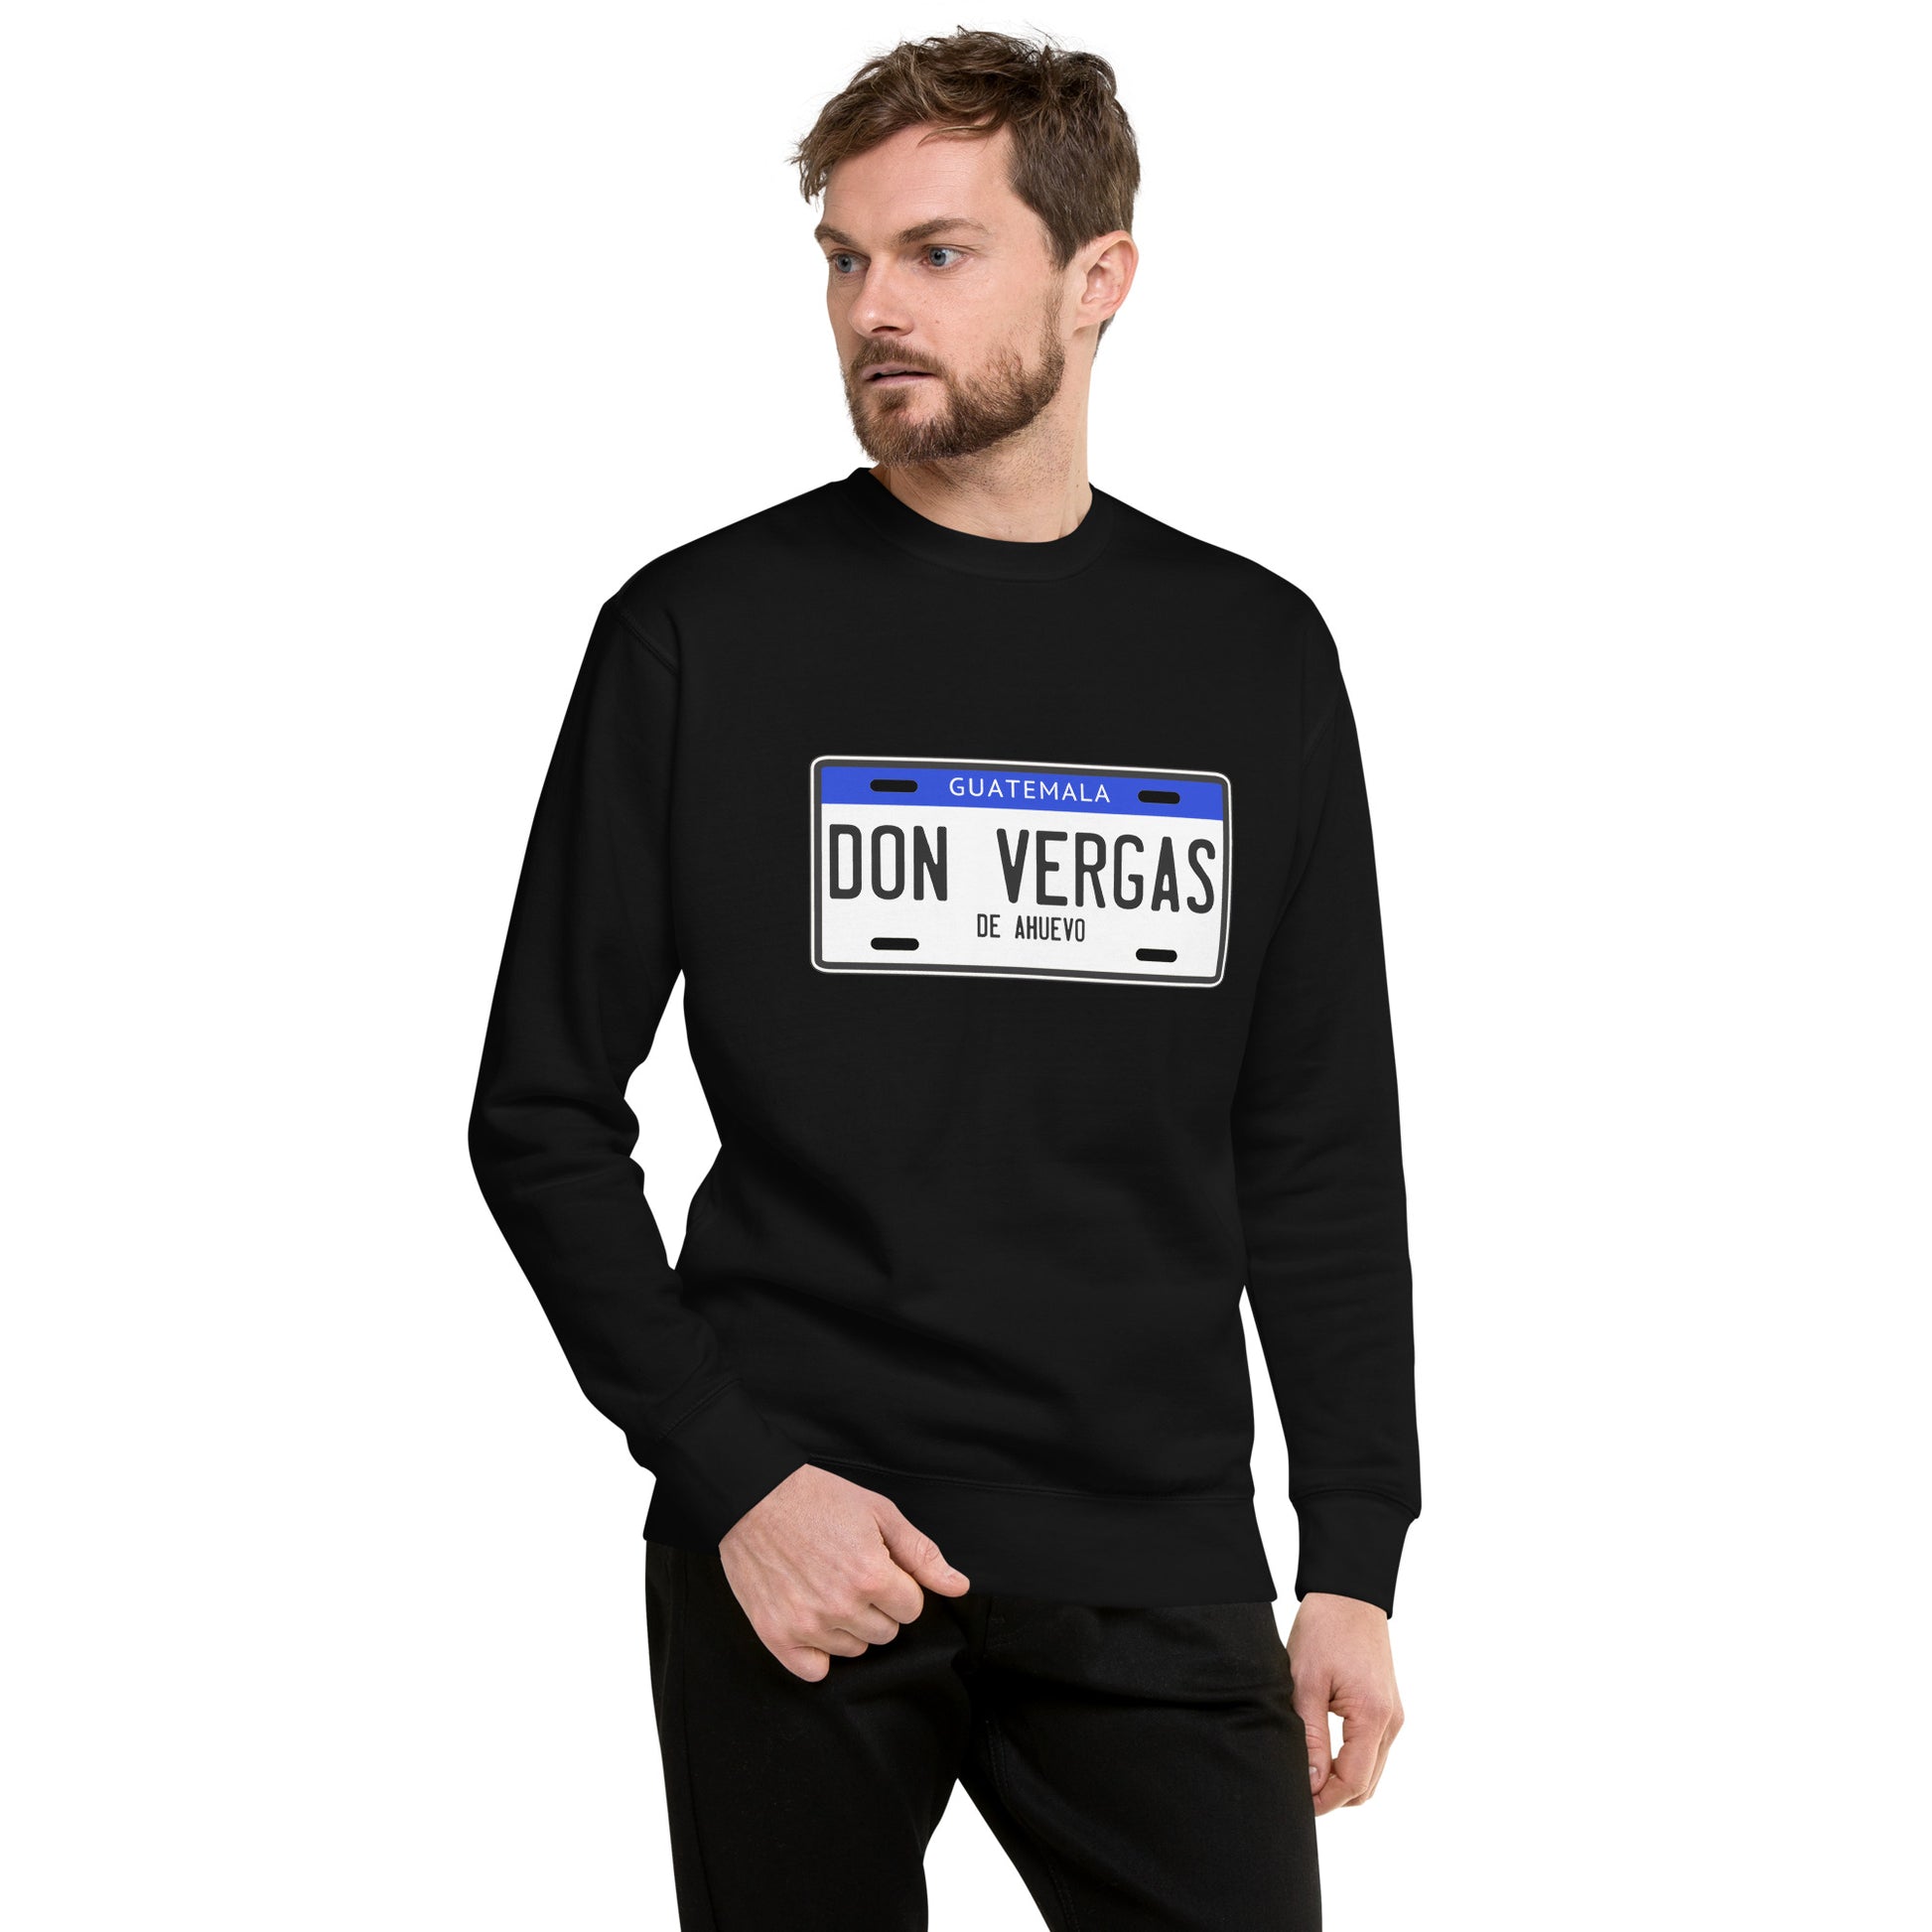 Suéter de Don Vergas ,Descubre calidad excepcional y estampados duraderos. Encuentra estilo y orgullo en cada prenda. Compra ahora!